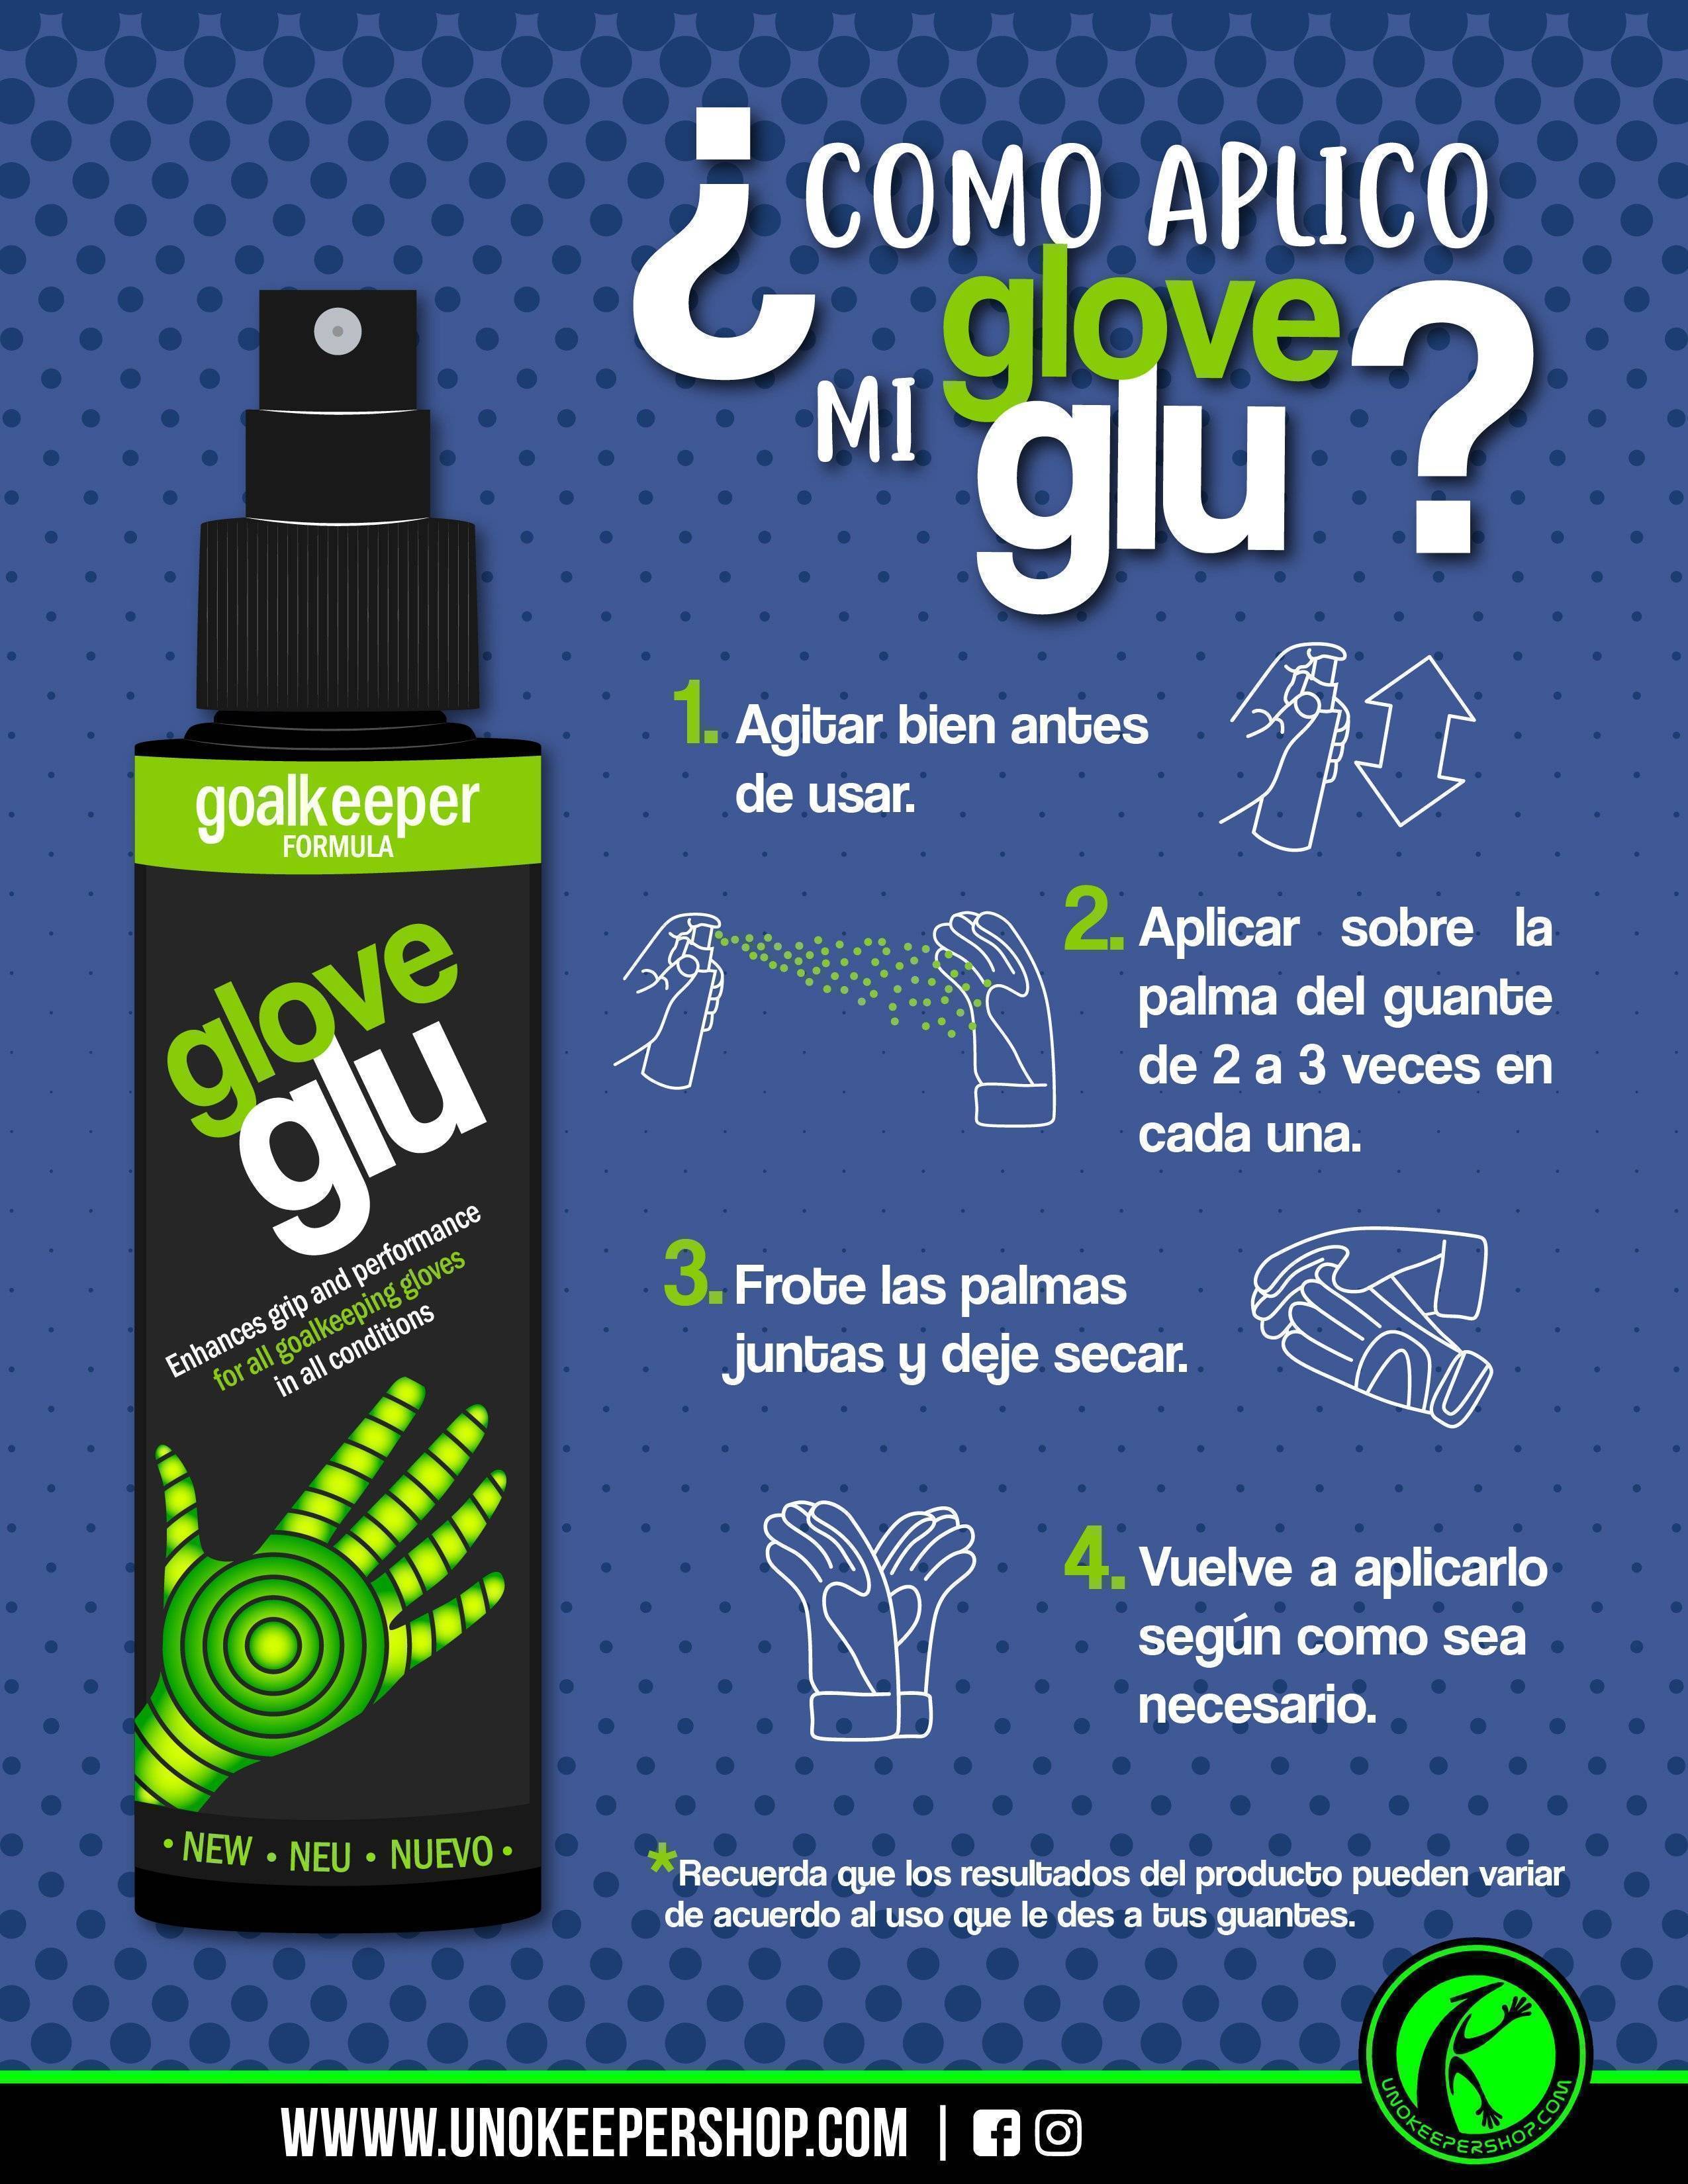 Glove Glu Latex Liquido – UnoKeeper